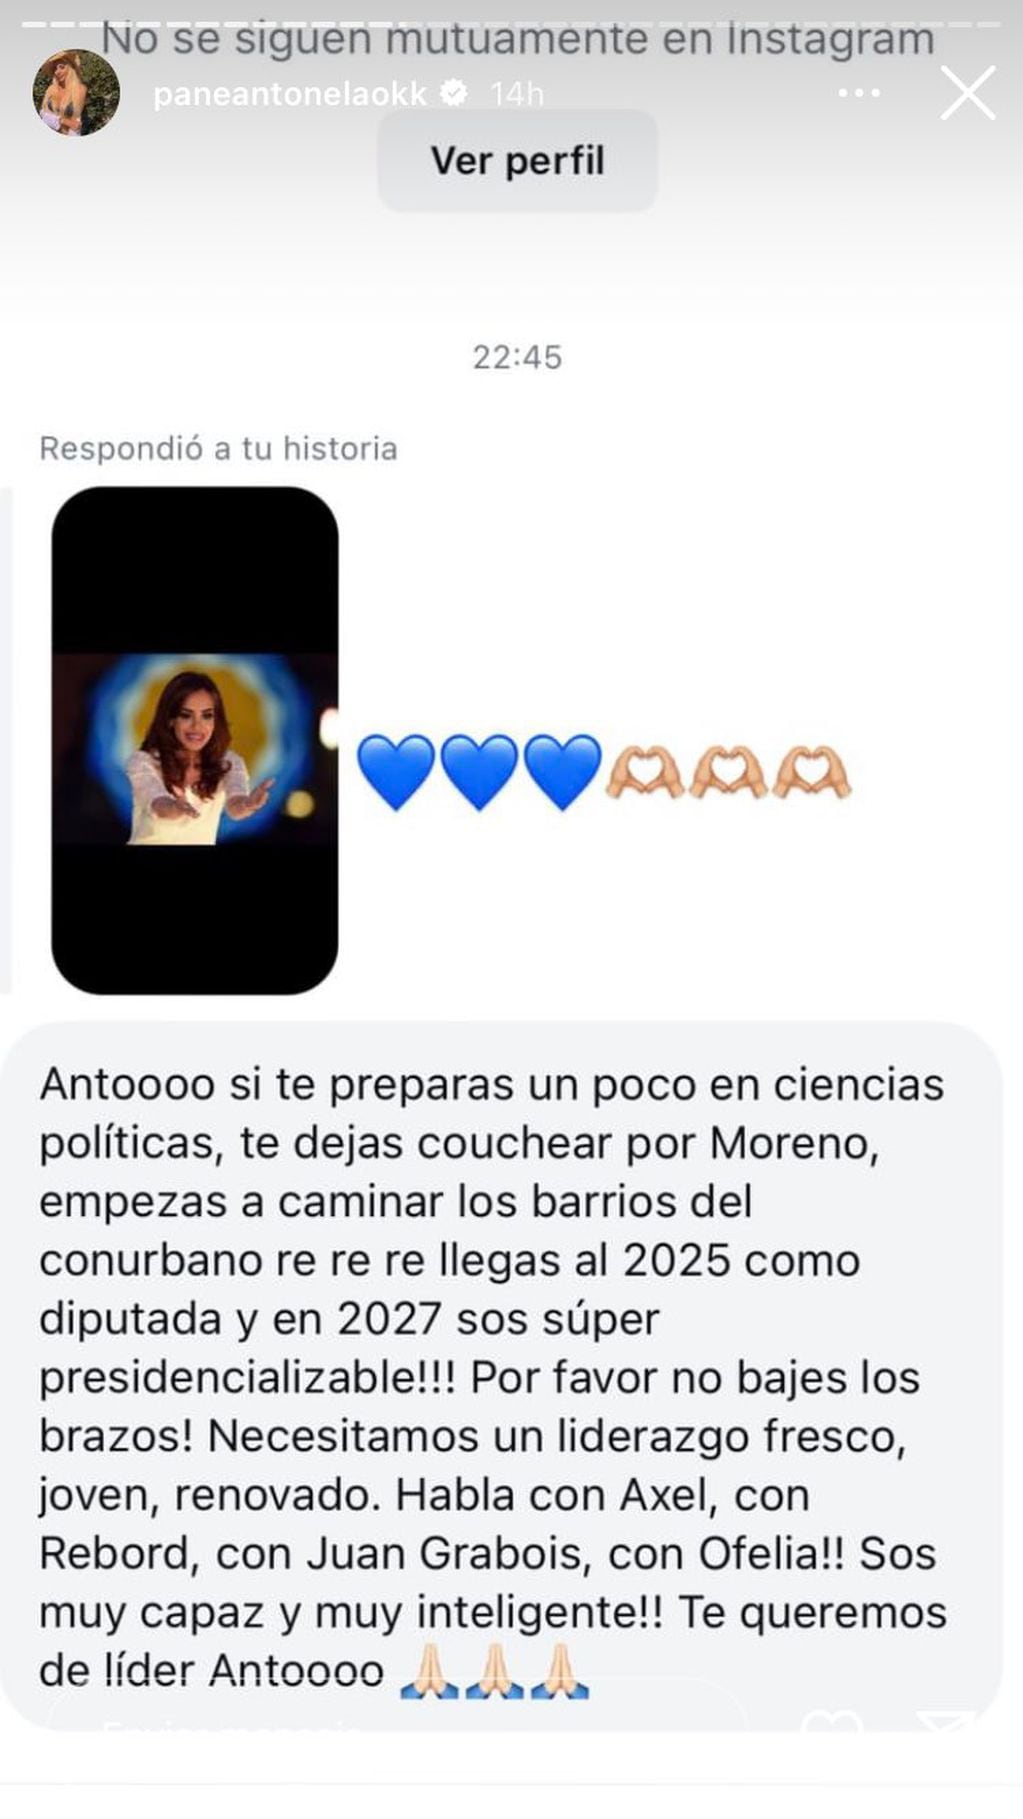 Anto Pane se comparó con Cristina Kirchner, ¿se lanza como candidata a presidenta 2027?